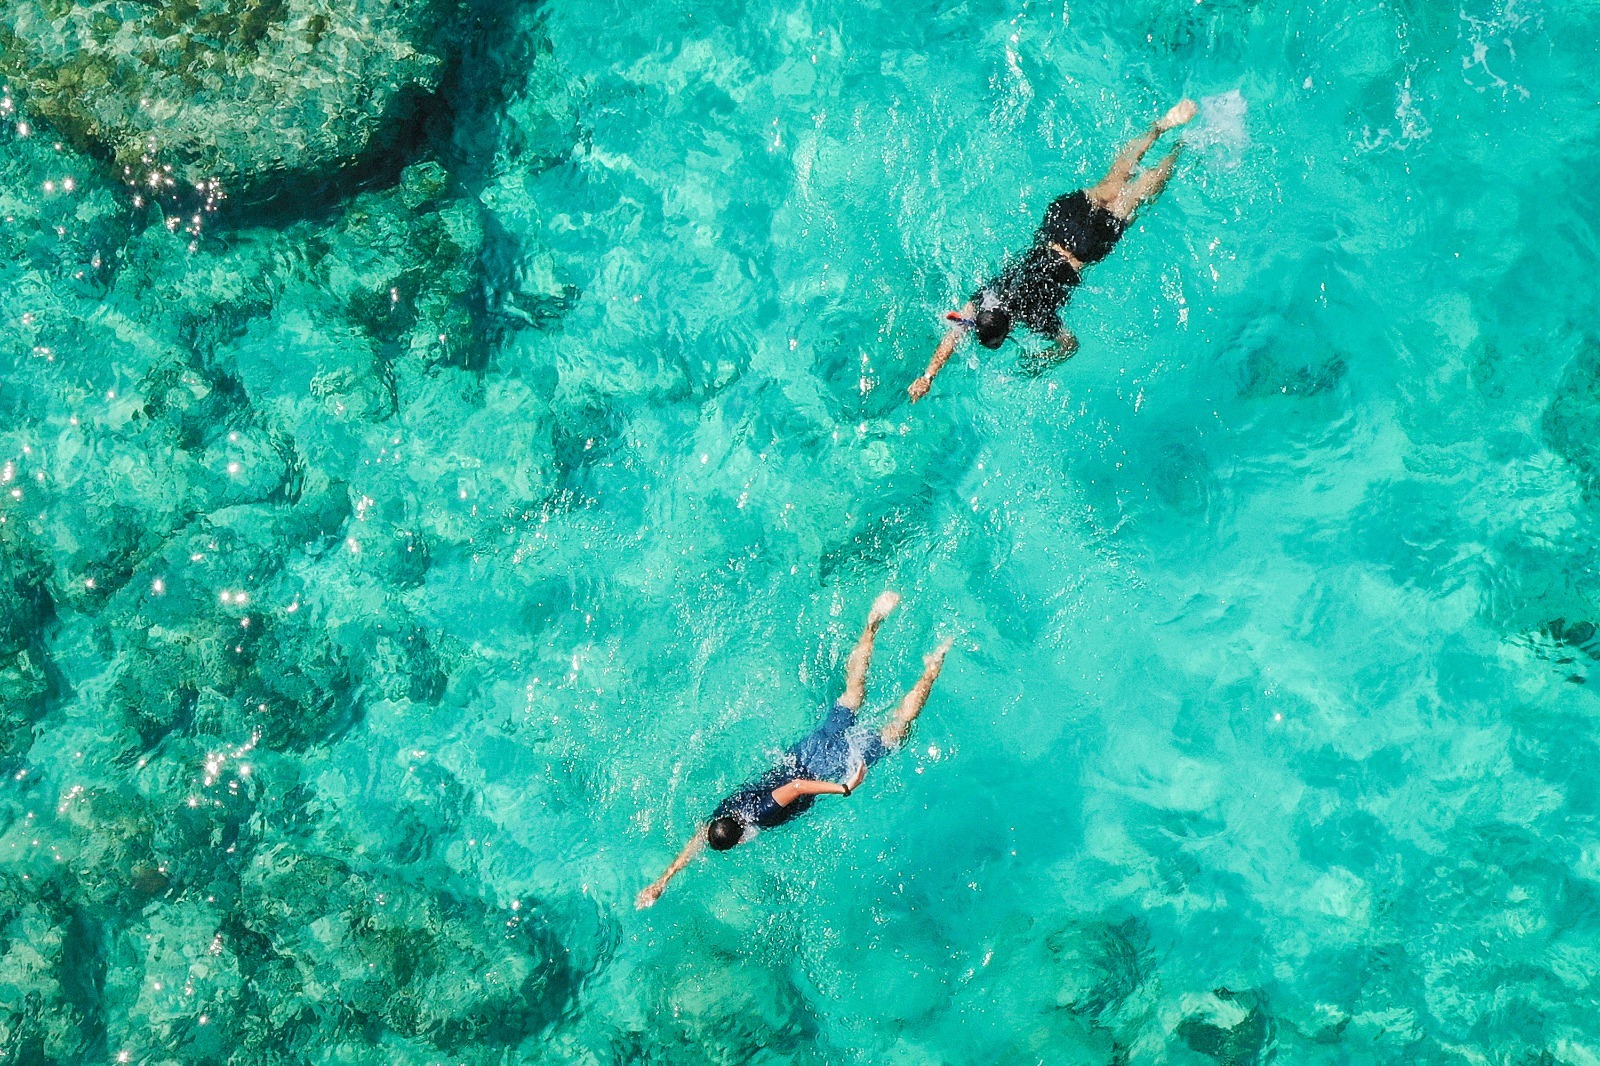 Berenang dan snorkeling adalah salah satu kegiatan saat island hopping (Sumber gambar: Kemenparekraf)